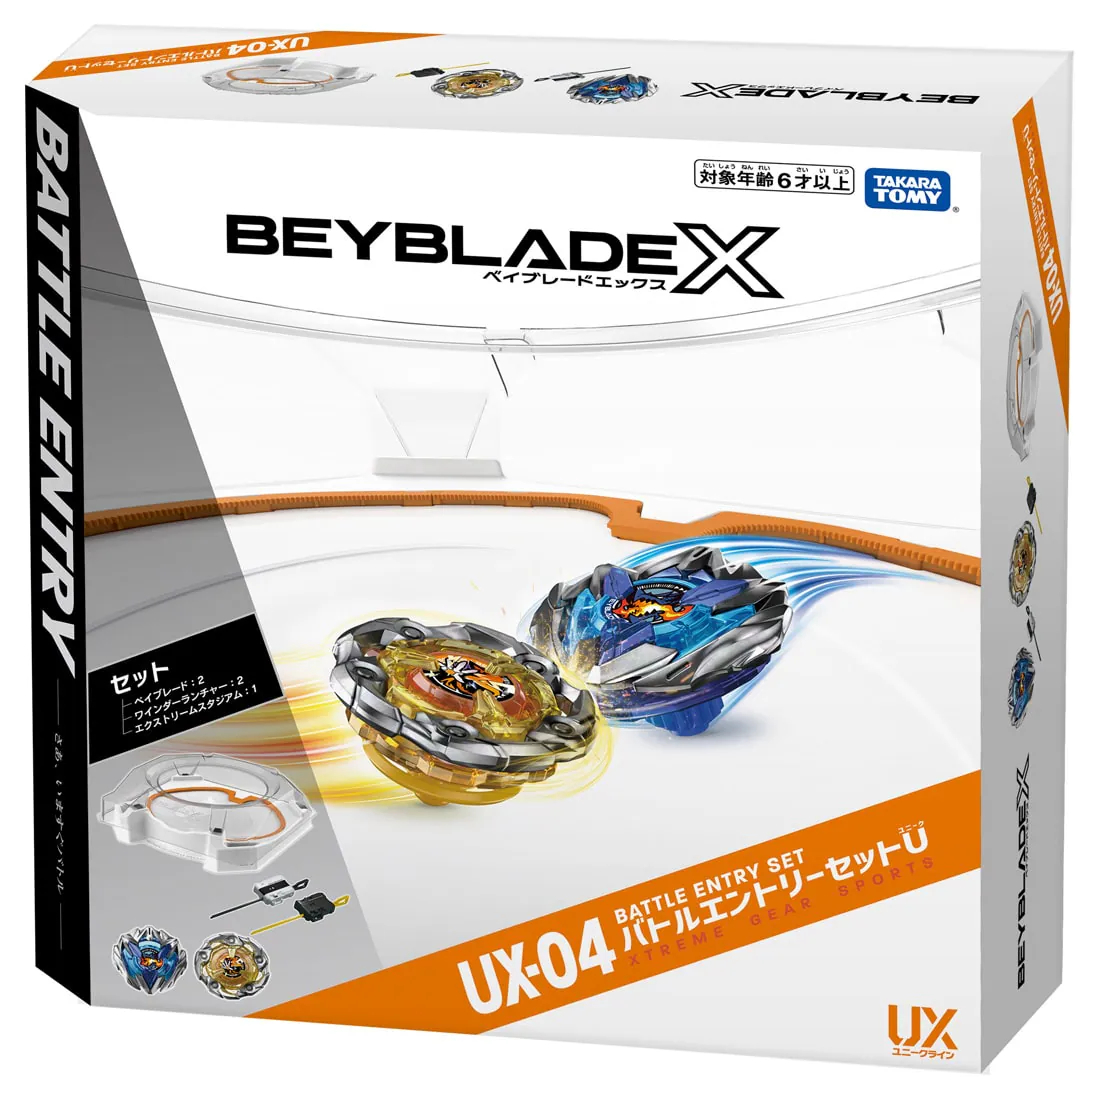 BEYBLADE X『UX-04 バトルエントリーセットU』ベイブレード-004